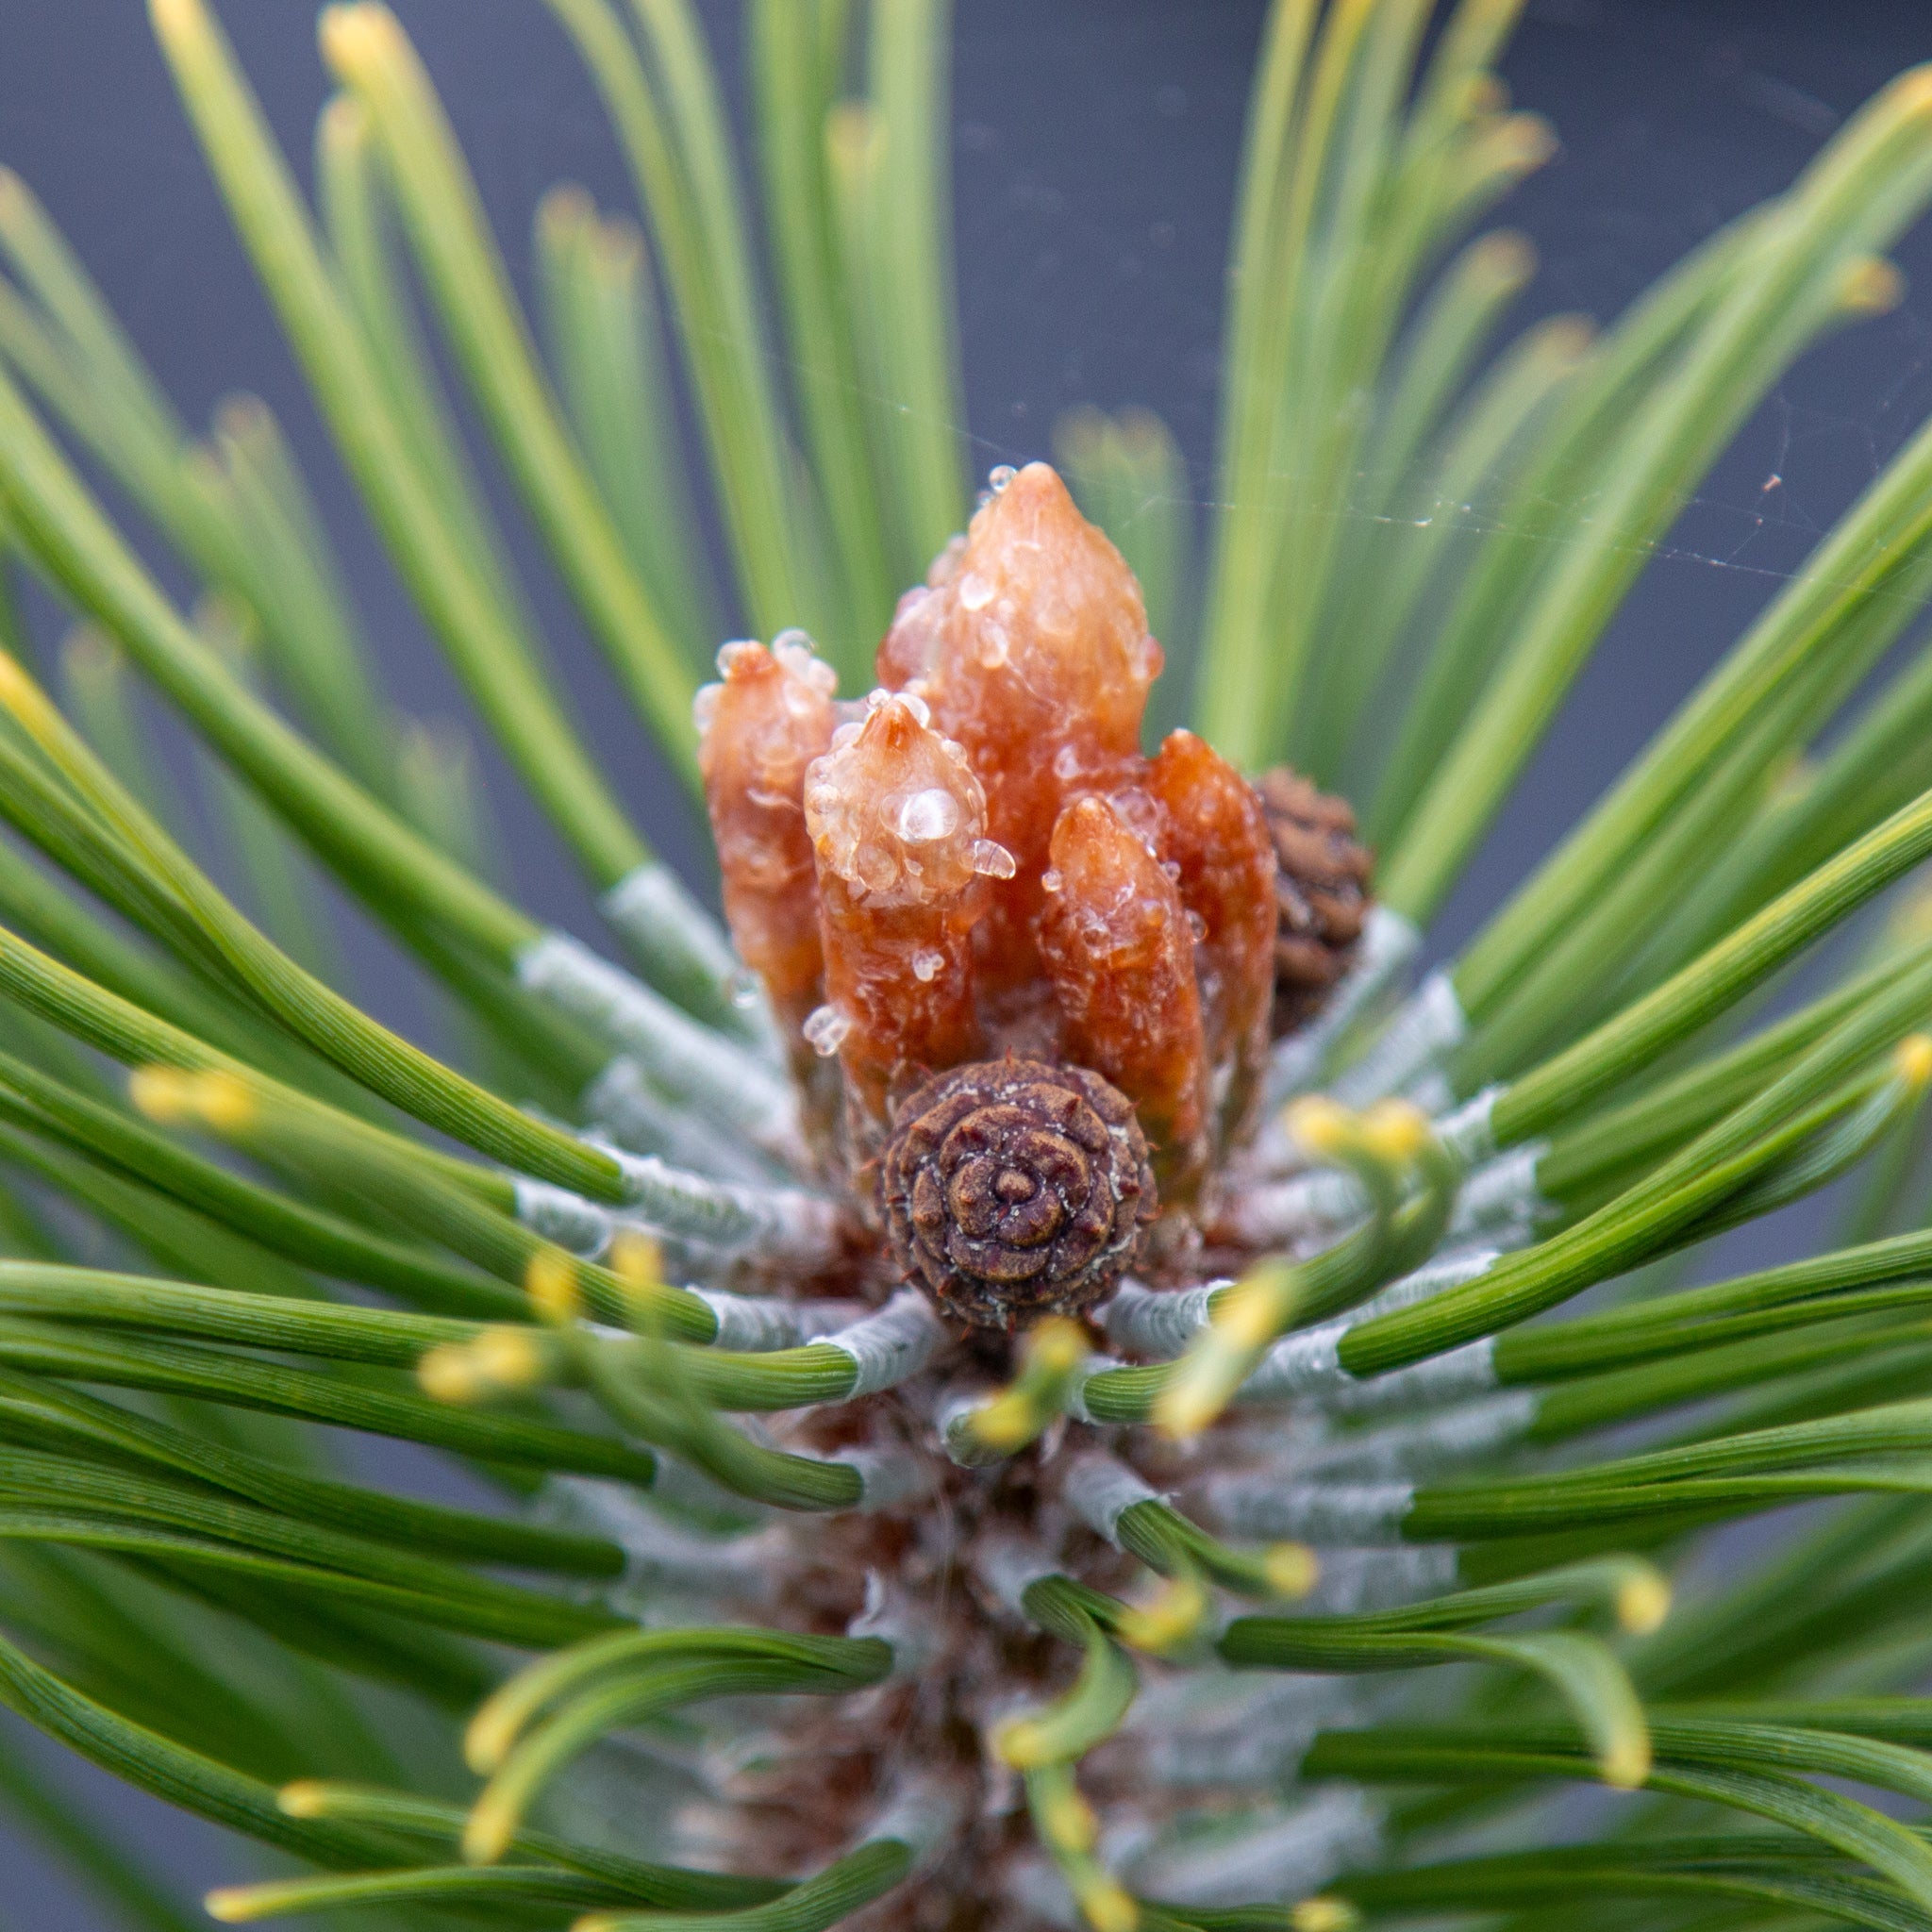 Pinus mugo Zundert